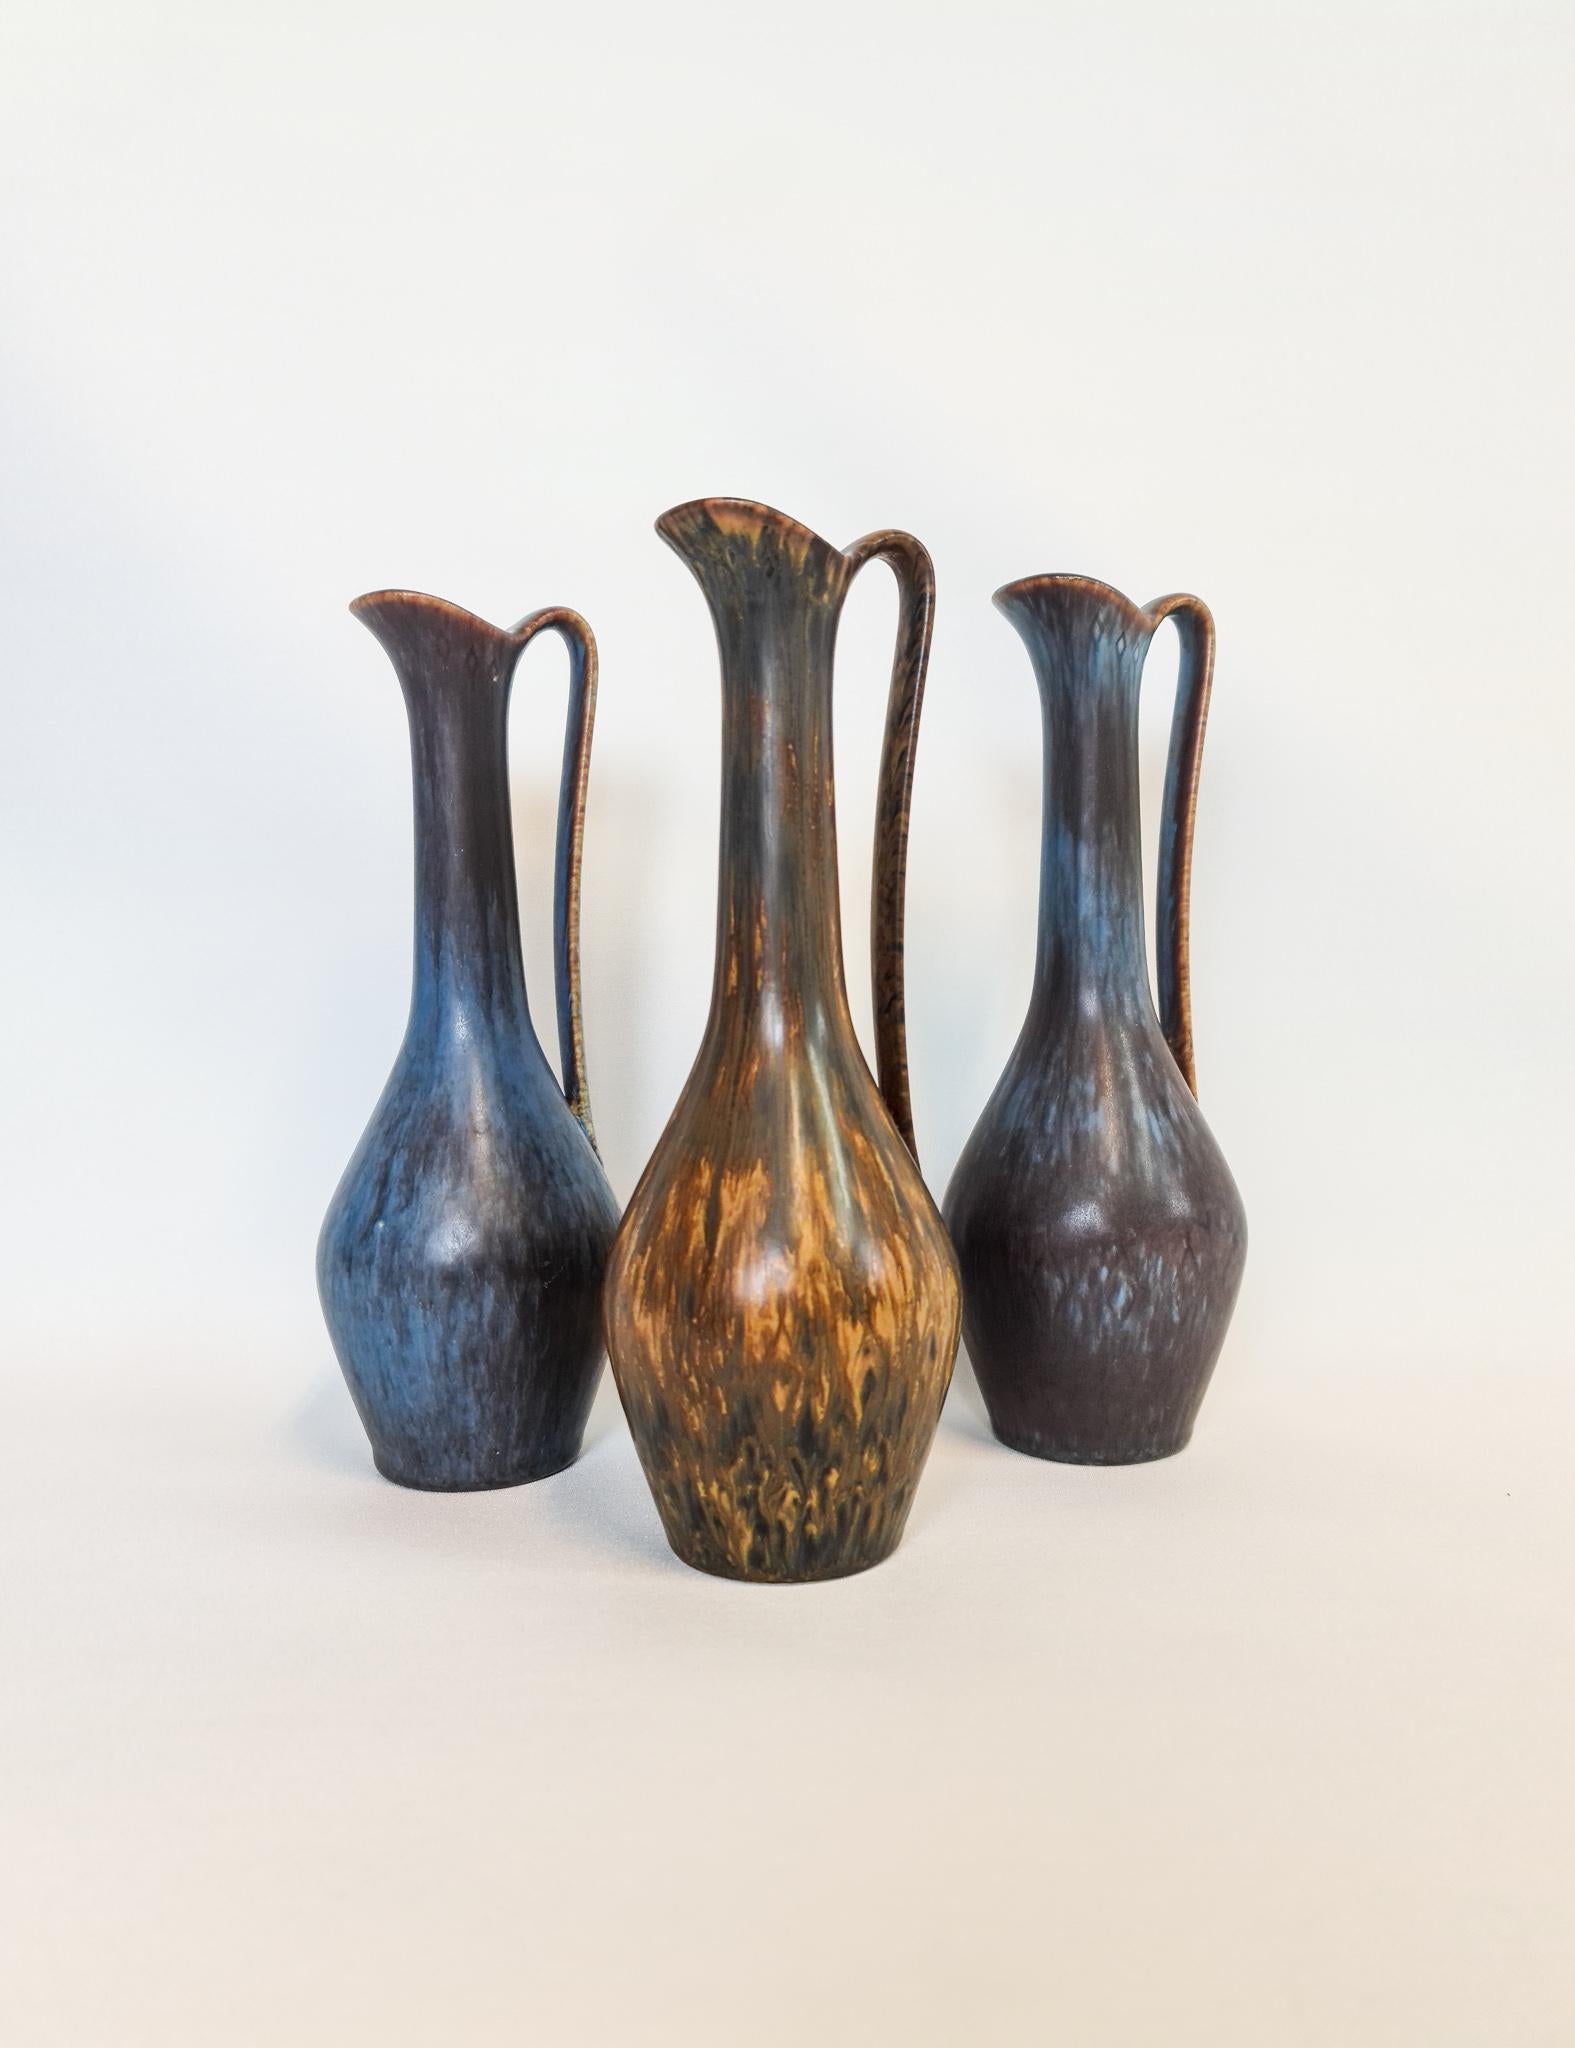 Trois magnifiques vases de Rörstrand et de son créateur, le designer Gunnar Nylund. Fabriqué en Suède au milieu du siècle dernier. Magnifiques vases émaillés en bon état.

Mesures : H 24 x D&H 8cm.
      